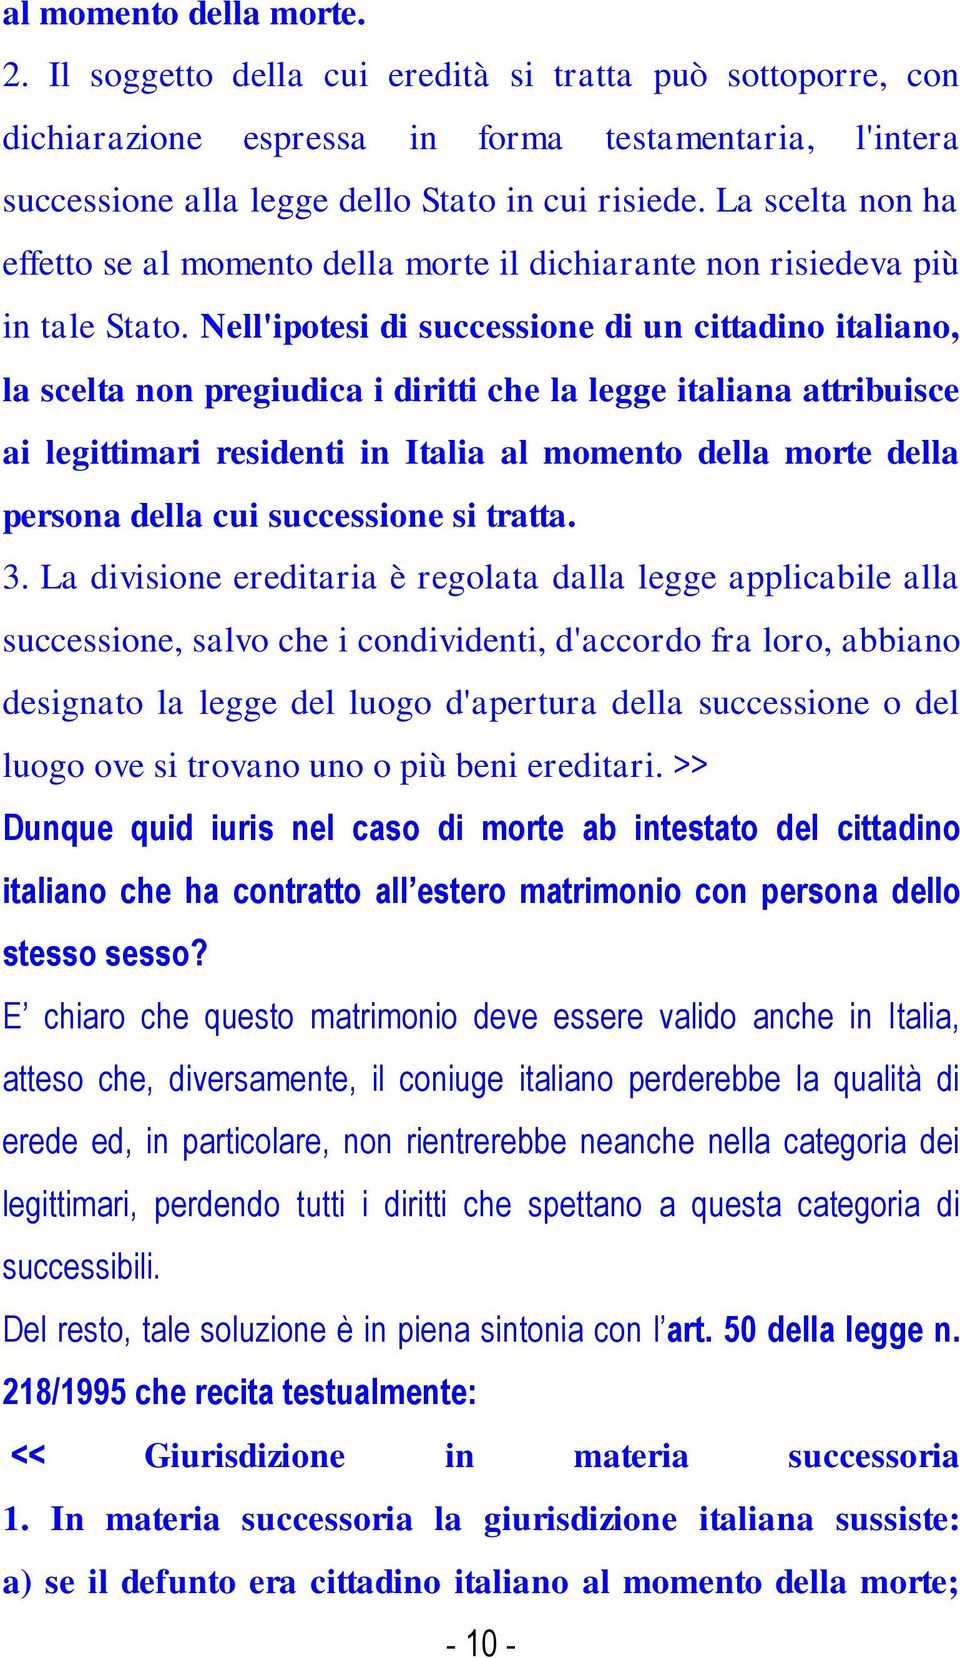 Nell'ipotesi di successione di un cittadino italiano, la scelta non pregiudica i diritti che la legge italiana attribuisce ai legittimari residenti in Italia al momento della morte della persona